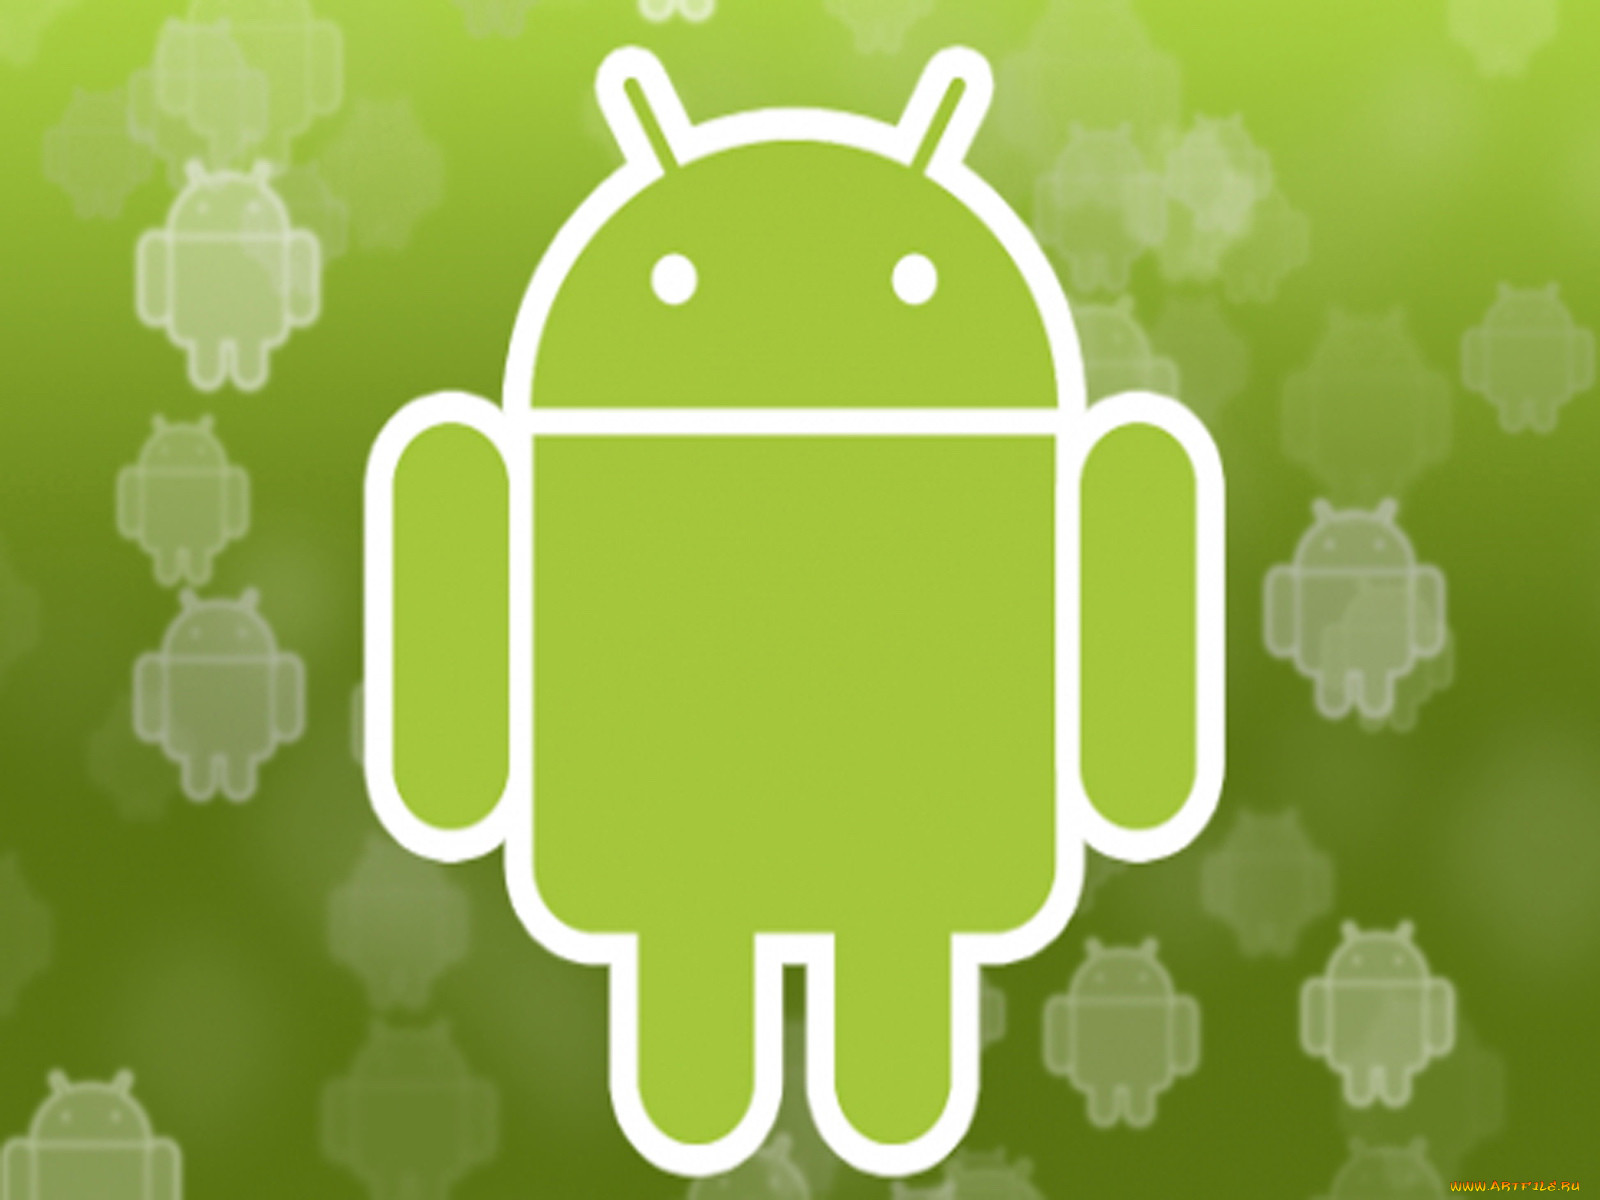 Bi android. Логотип андроид. Картинки на андроид. Андроид рисунок. Картинки андроид на аву.